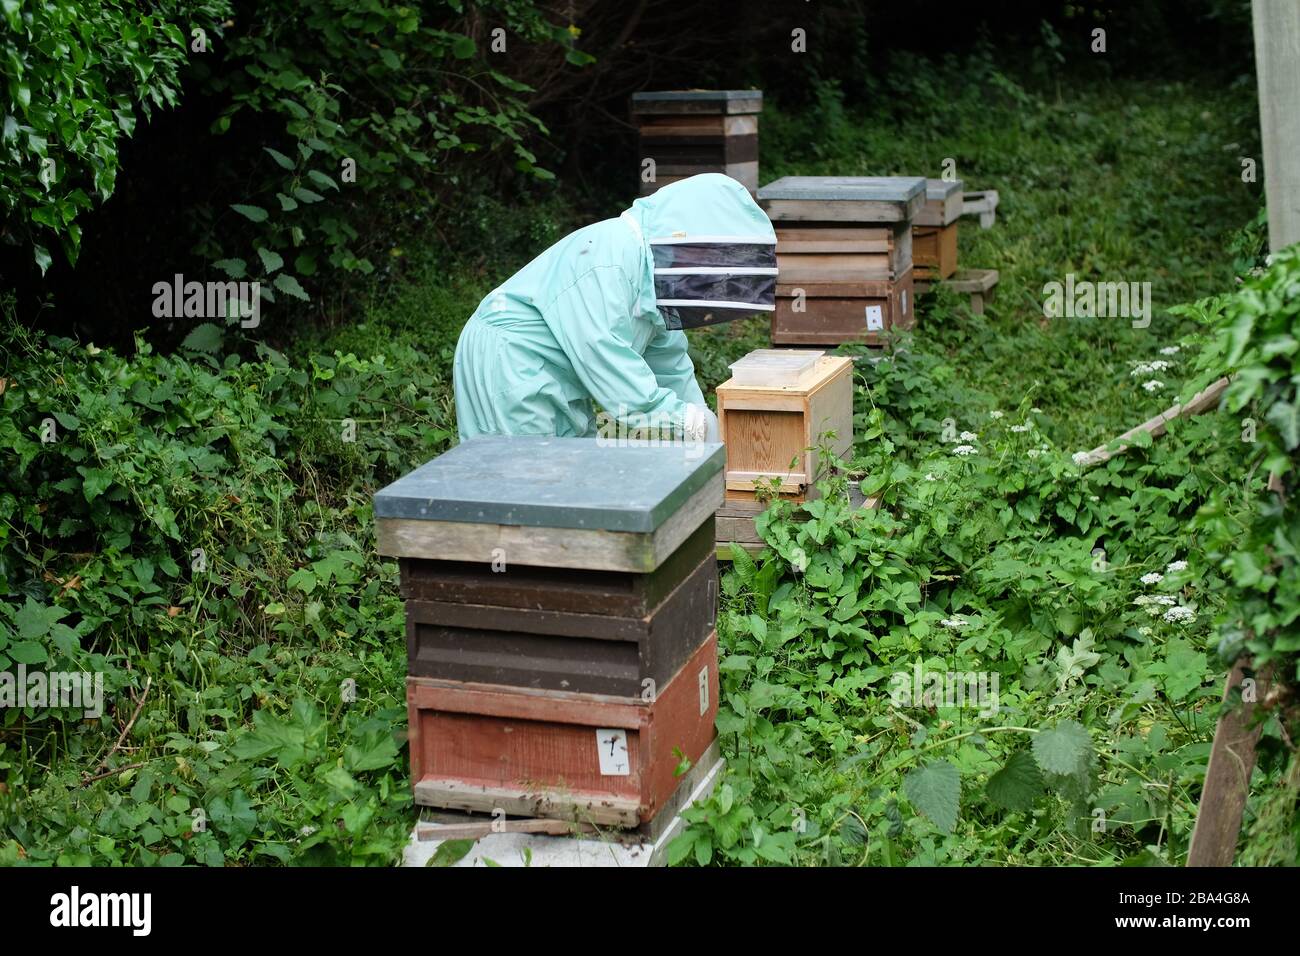 Apiculteur amateur nourrissant du sucre pour compléter la nourriture pour les ruches. ROYAUME-UNI Banque D'Images